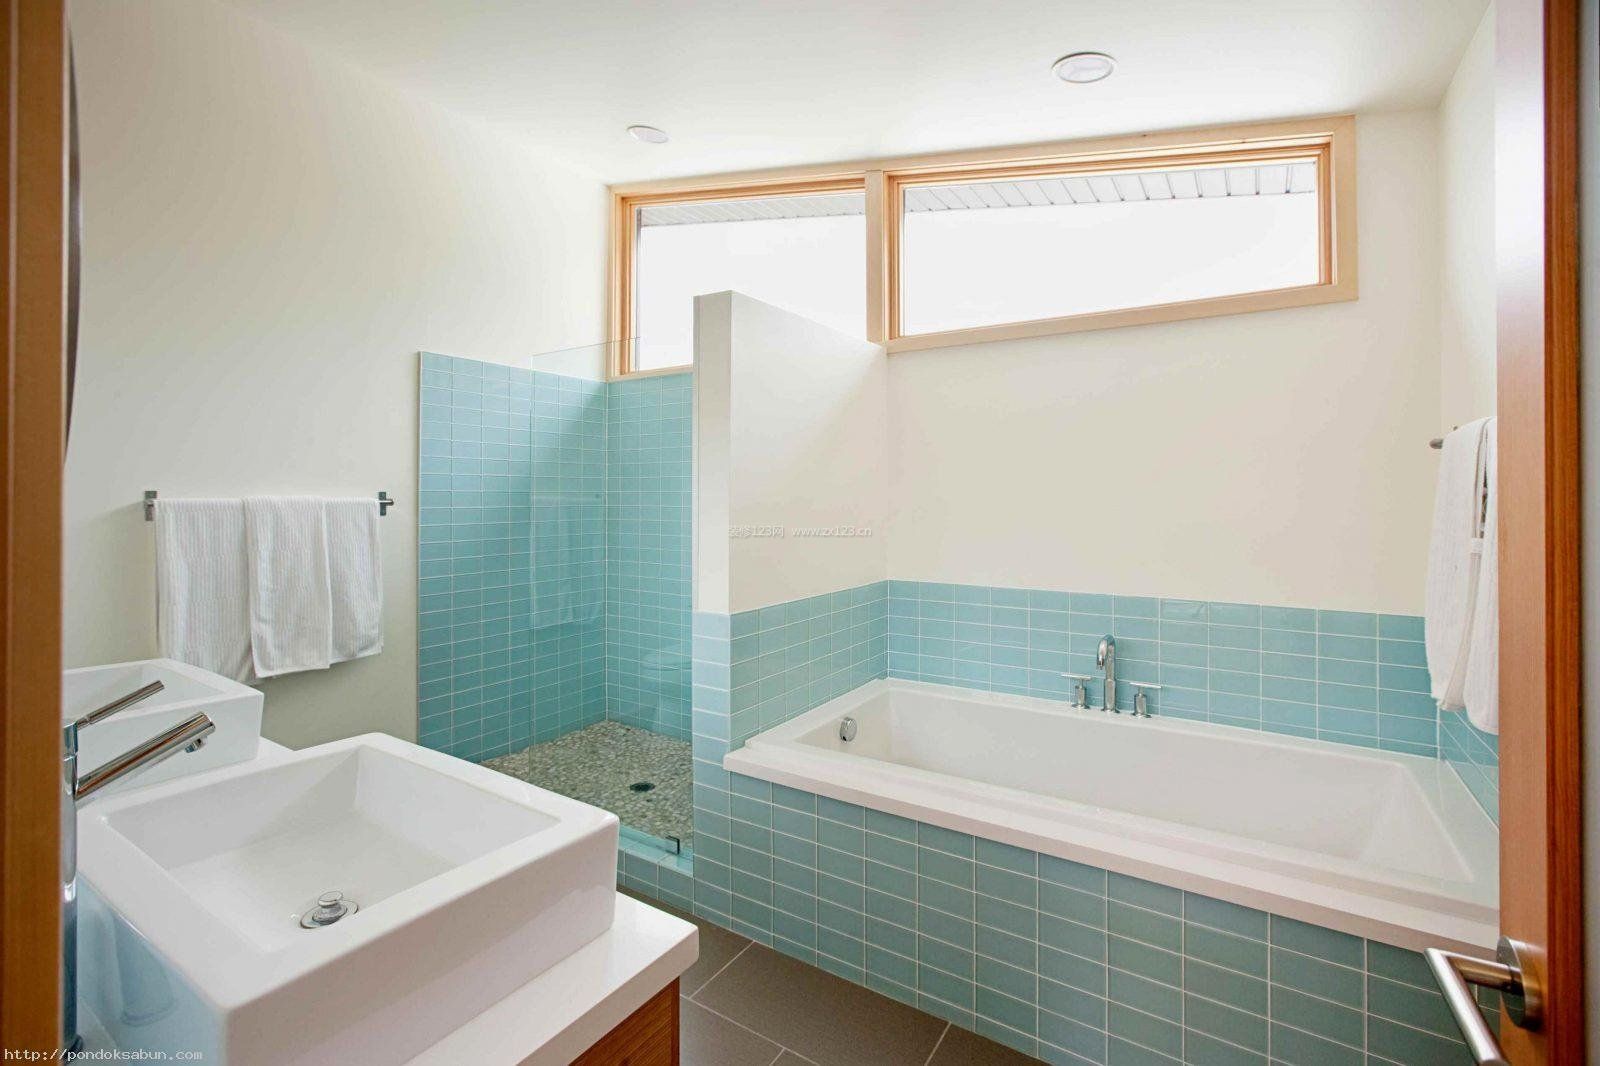 蓝色卫生间砖砌浴缸装修效果图片